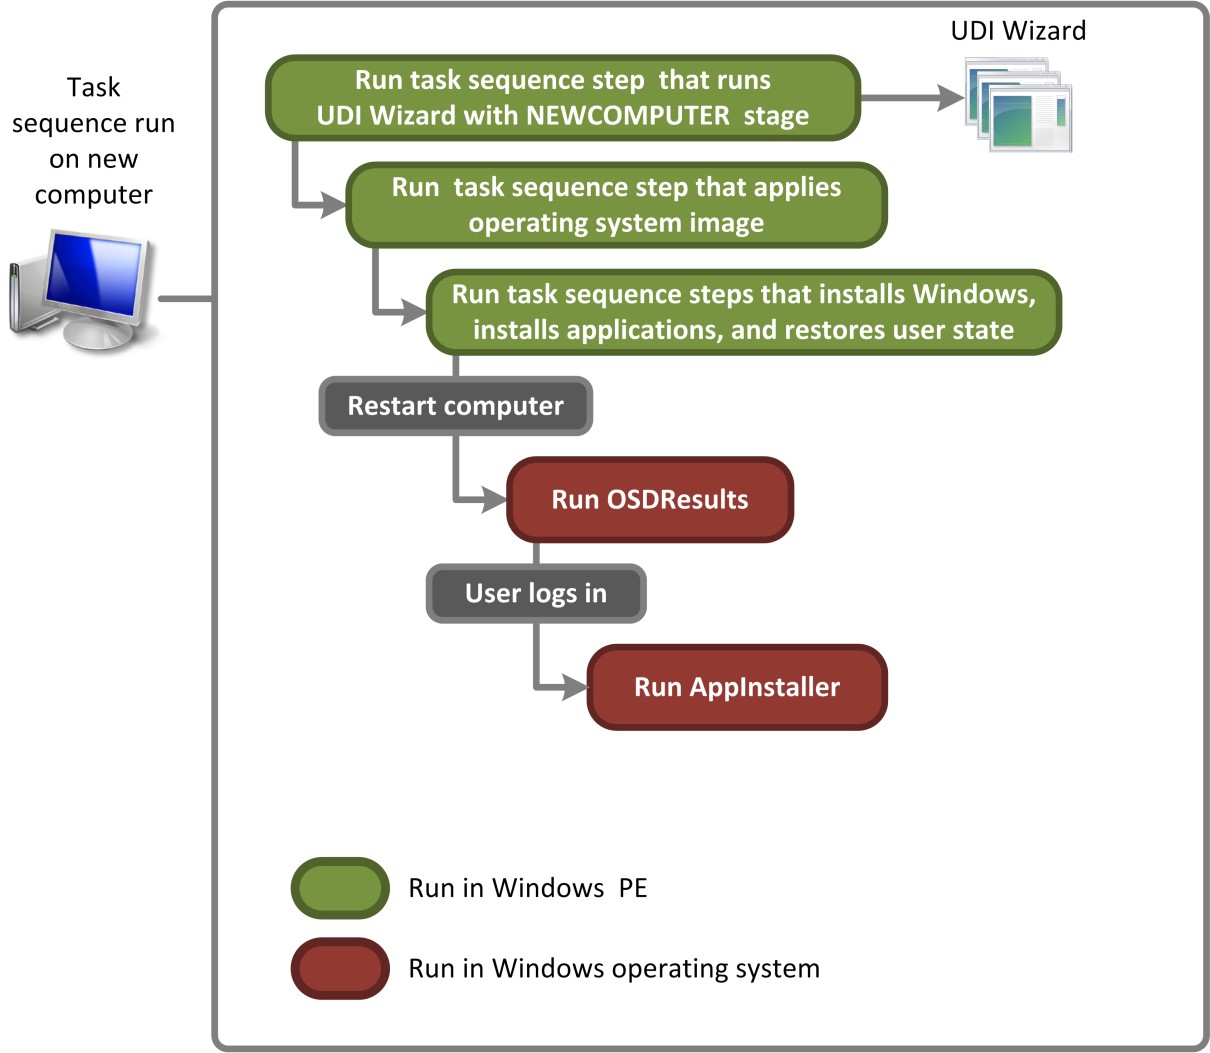 Afbeelding 2. Processtroom voor UDI die het implementatiescenario nieuwe computer uitvoert voor installatiekopieën die zijn opgeslagen op distributiepunten